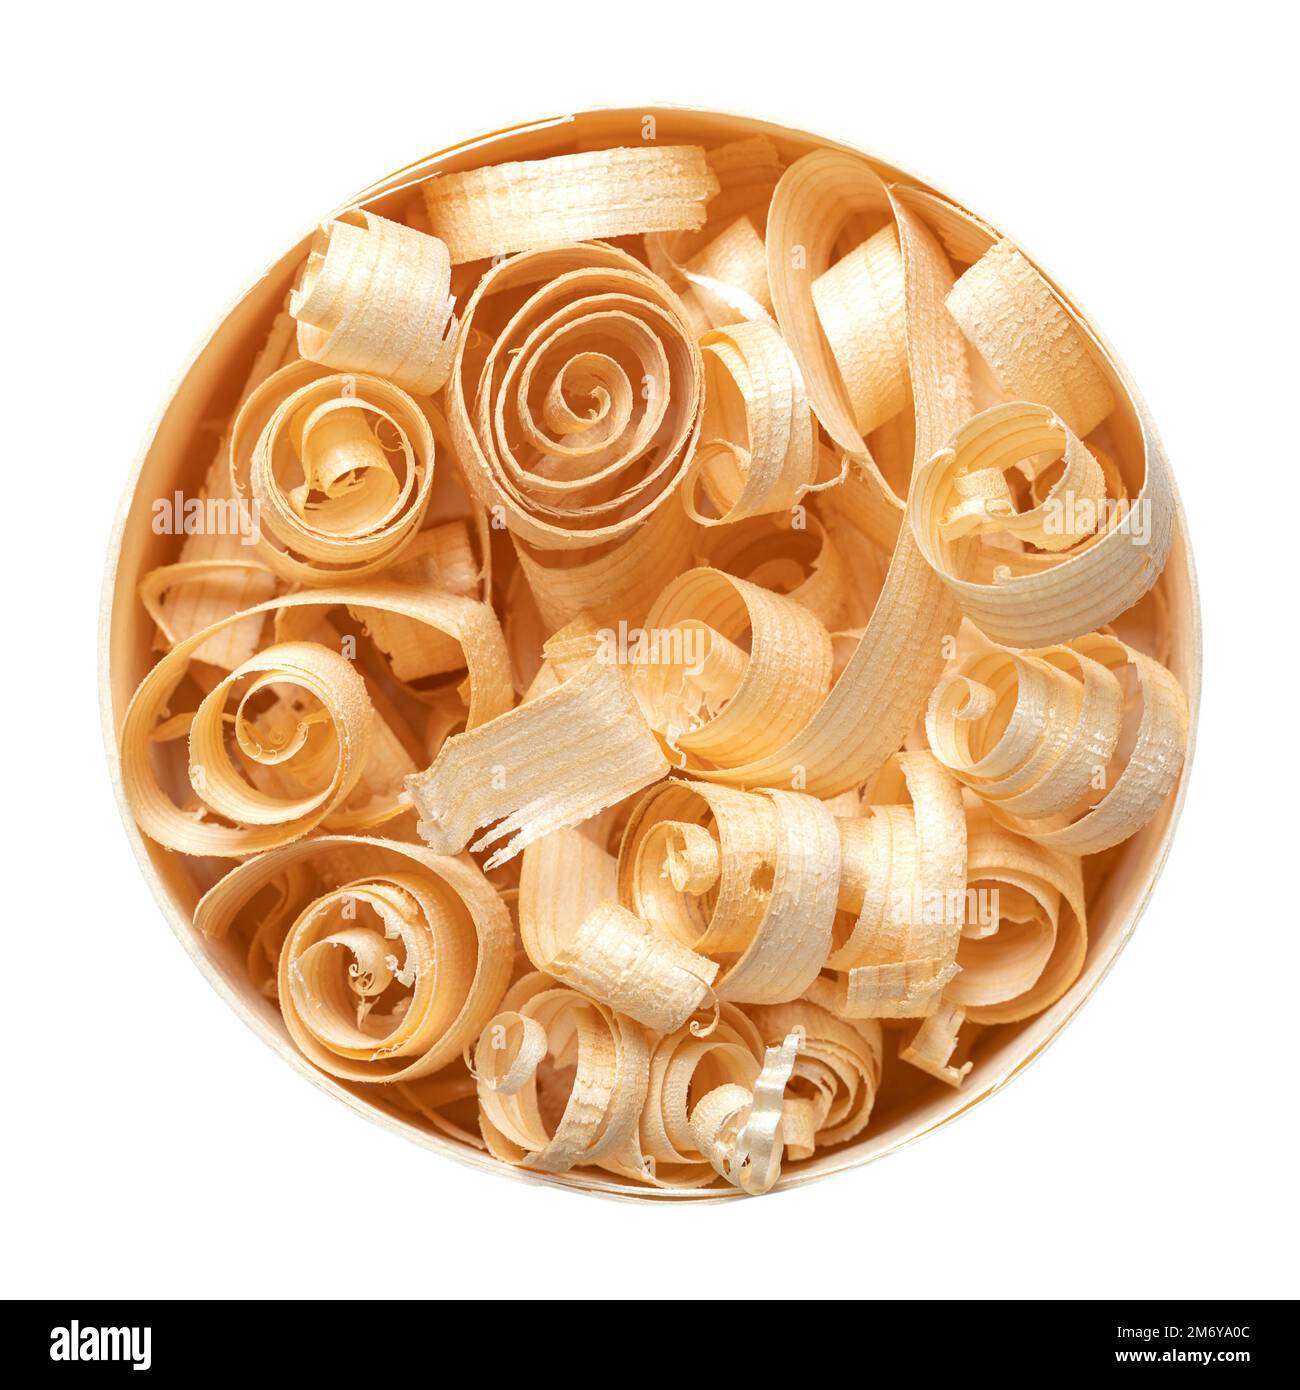 Spiralförmige Holzspäne in einem runden Spanholzkasten. Holzspiralen, hergestellt mit einem Handhobel aus getrocknetem Fichtenholz, in einem kreisförmigen Holzspäne-Kasten. Stockfoto